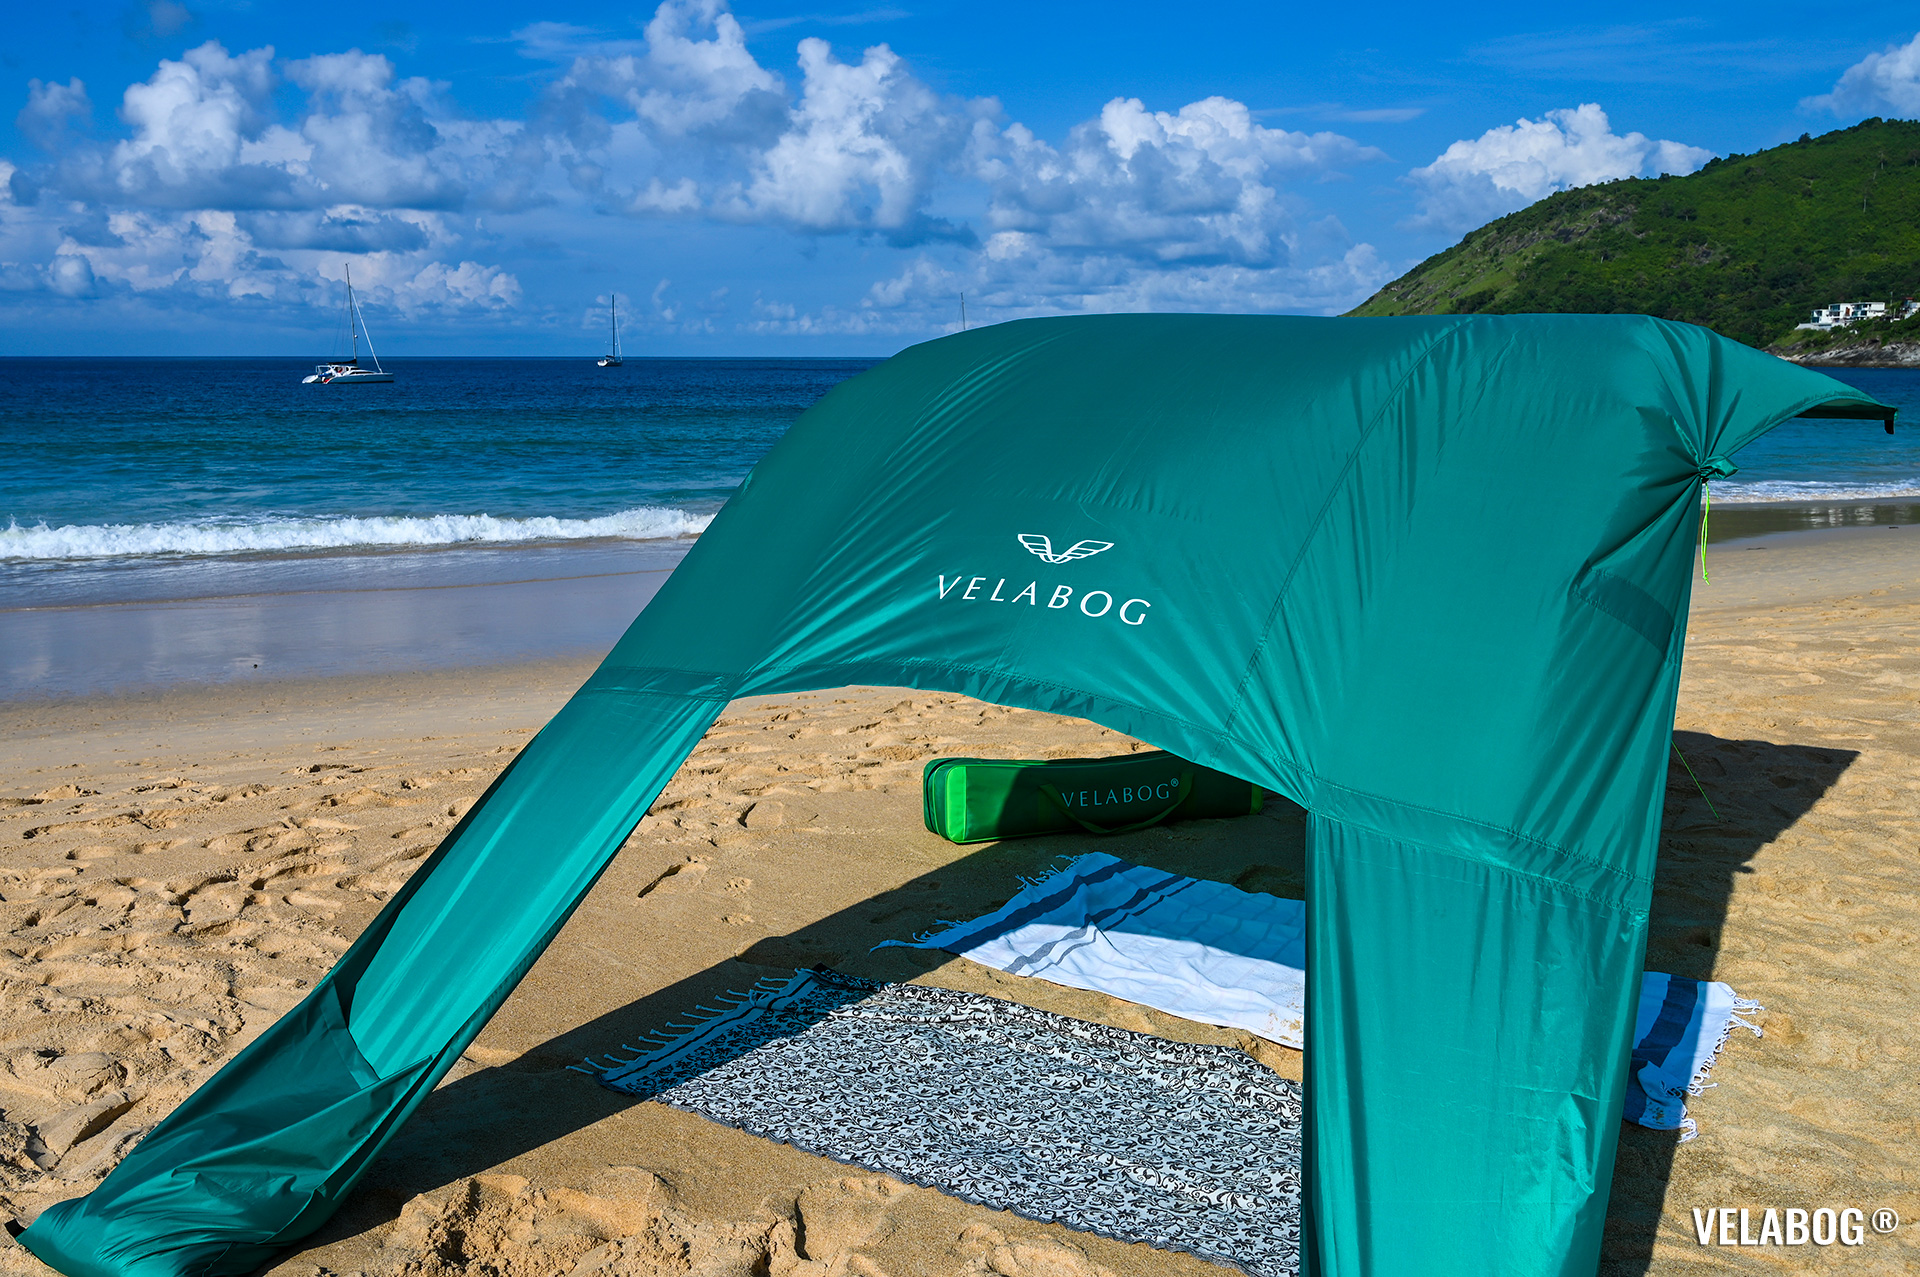 Strand Sonnensegel Strandzelt Velabog Breeze, grün. Bester Sonnenschutz am Strand. Hochwertig und stylisch. Test Strand Sonnensegel Aufbauoption beim leichten bis starken Wind. Ansicht von hinten, details.